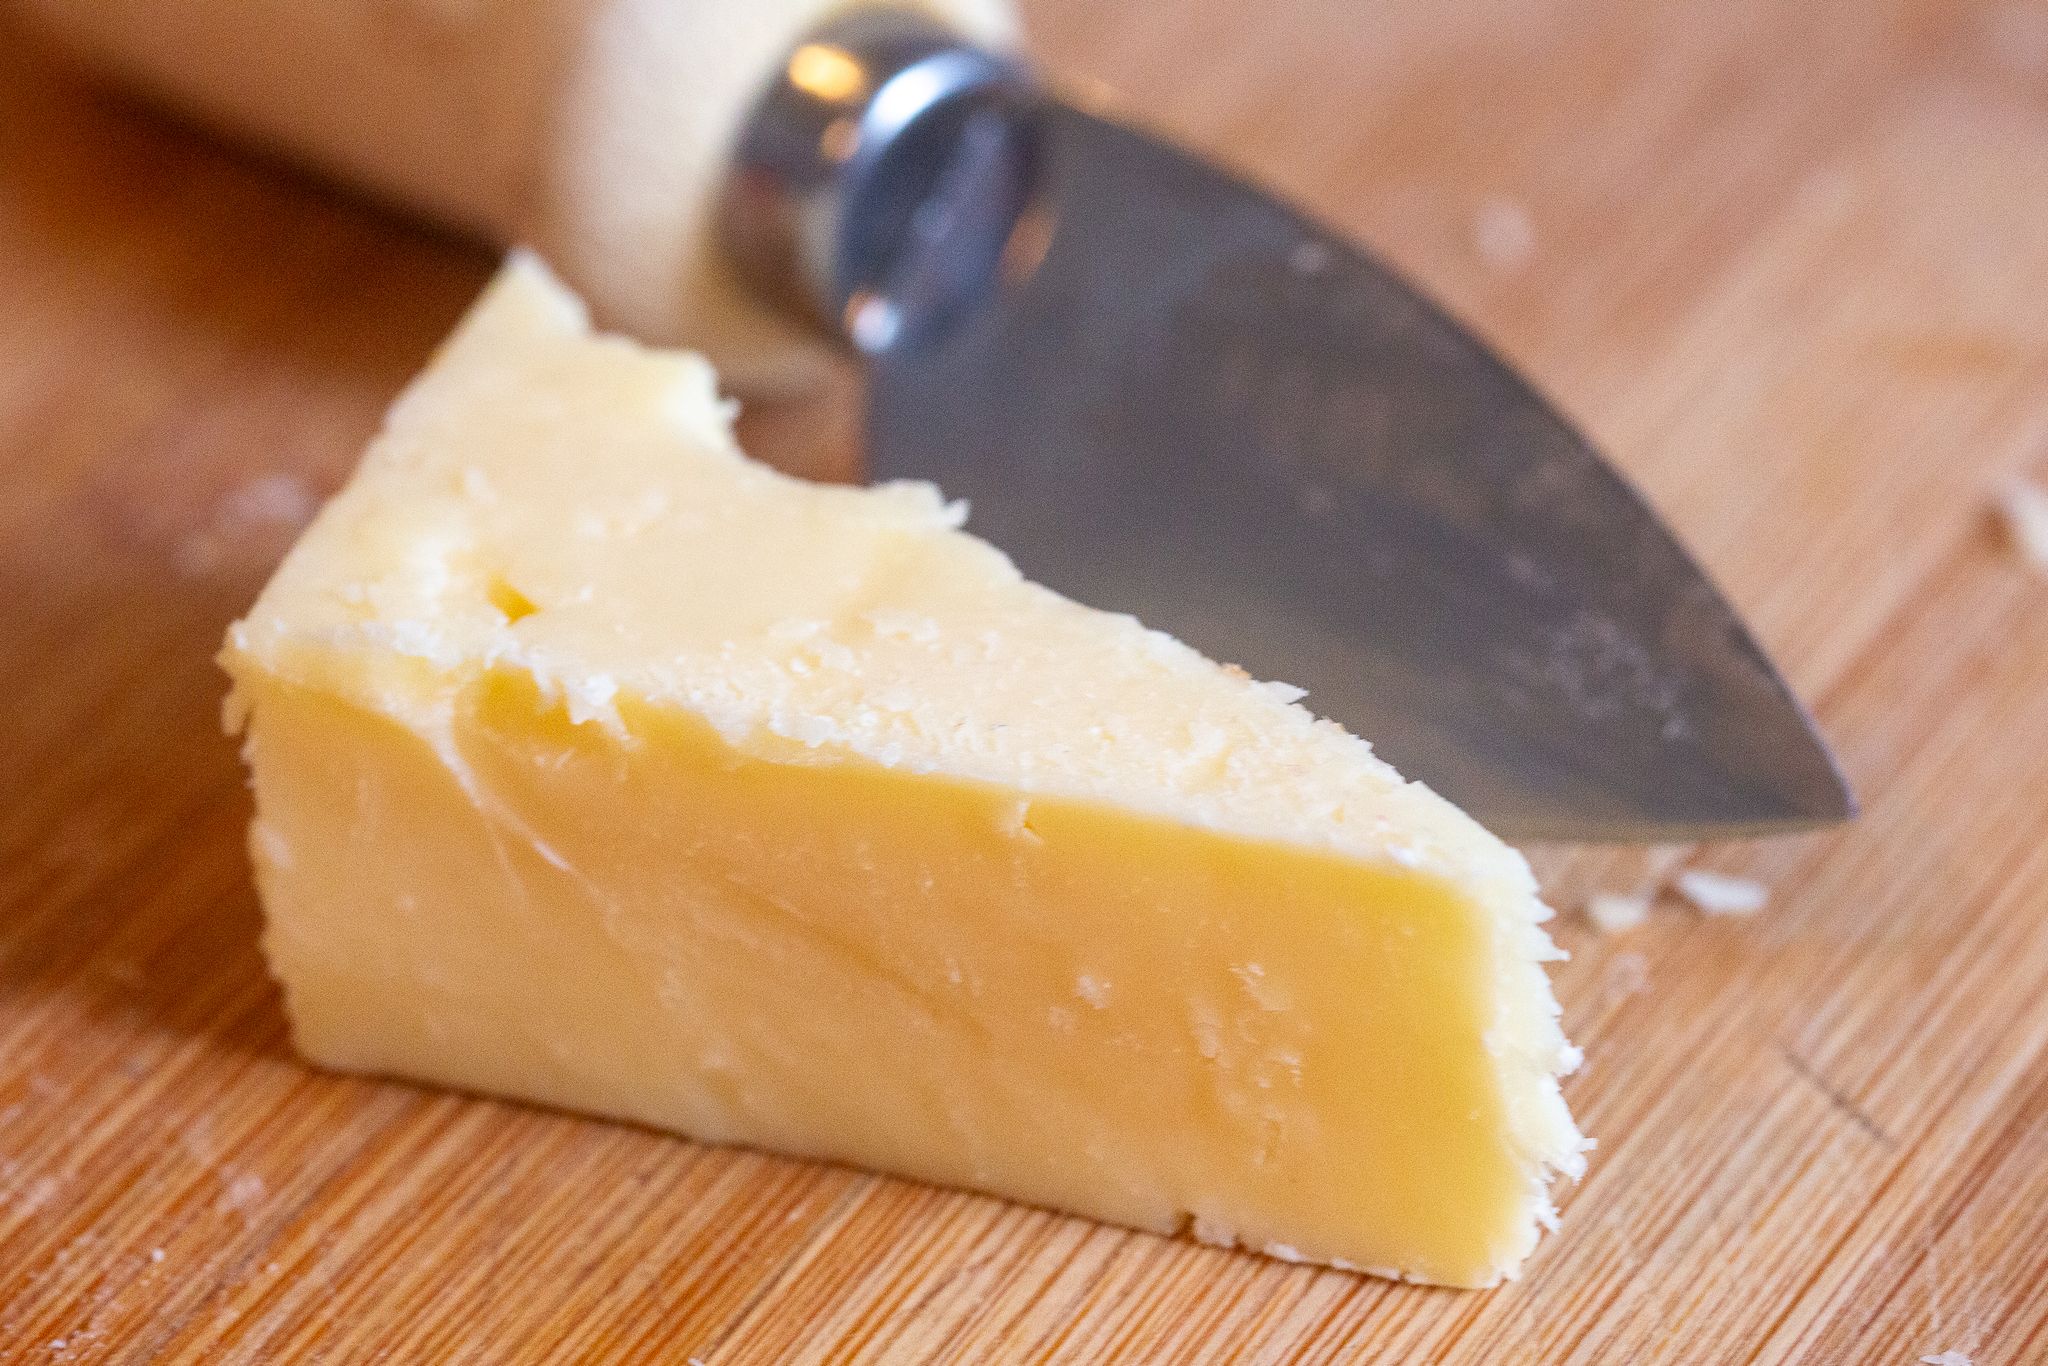 Polizist stiehlt 180 kg Cheddar-Käse und verliert Job